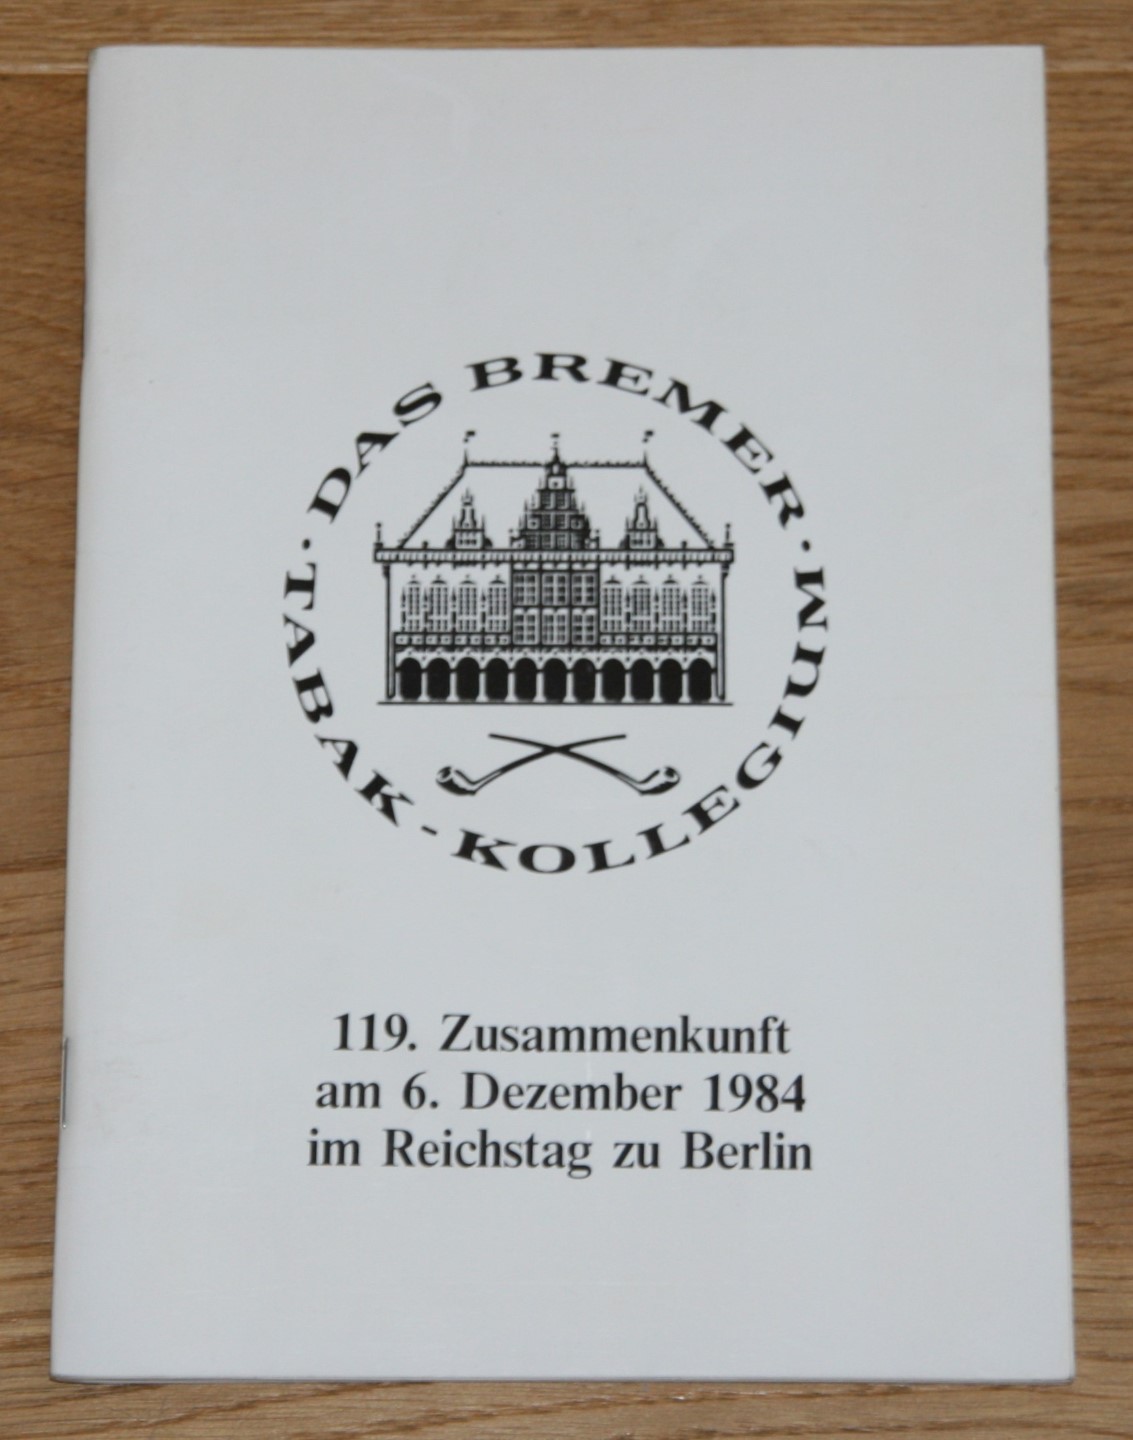 Das Bremer Tabak-Kollegium. 119. Zusammenkunft am 06. Dezember 1984 im Reichstag zu Berlin.